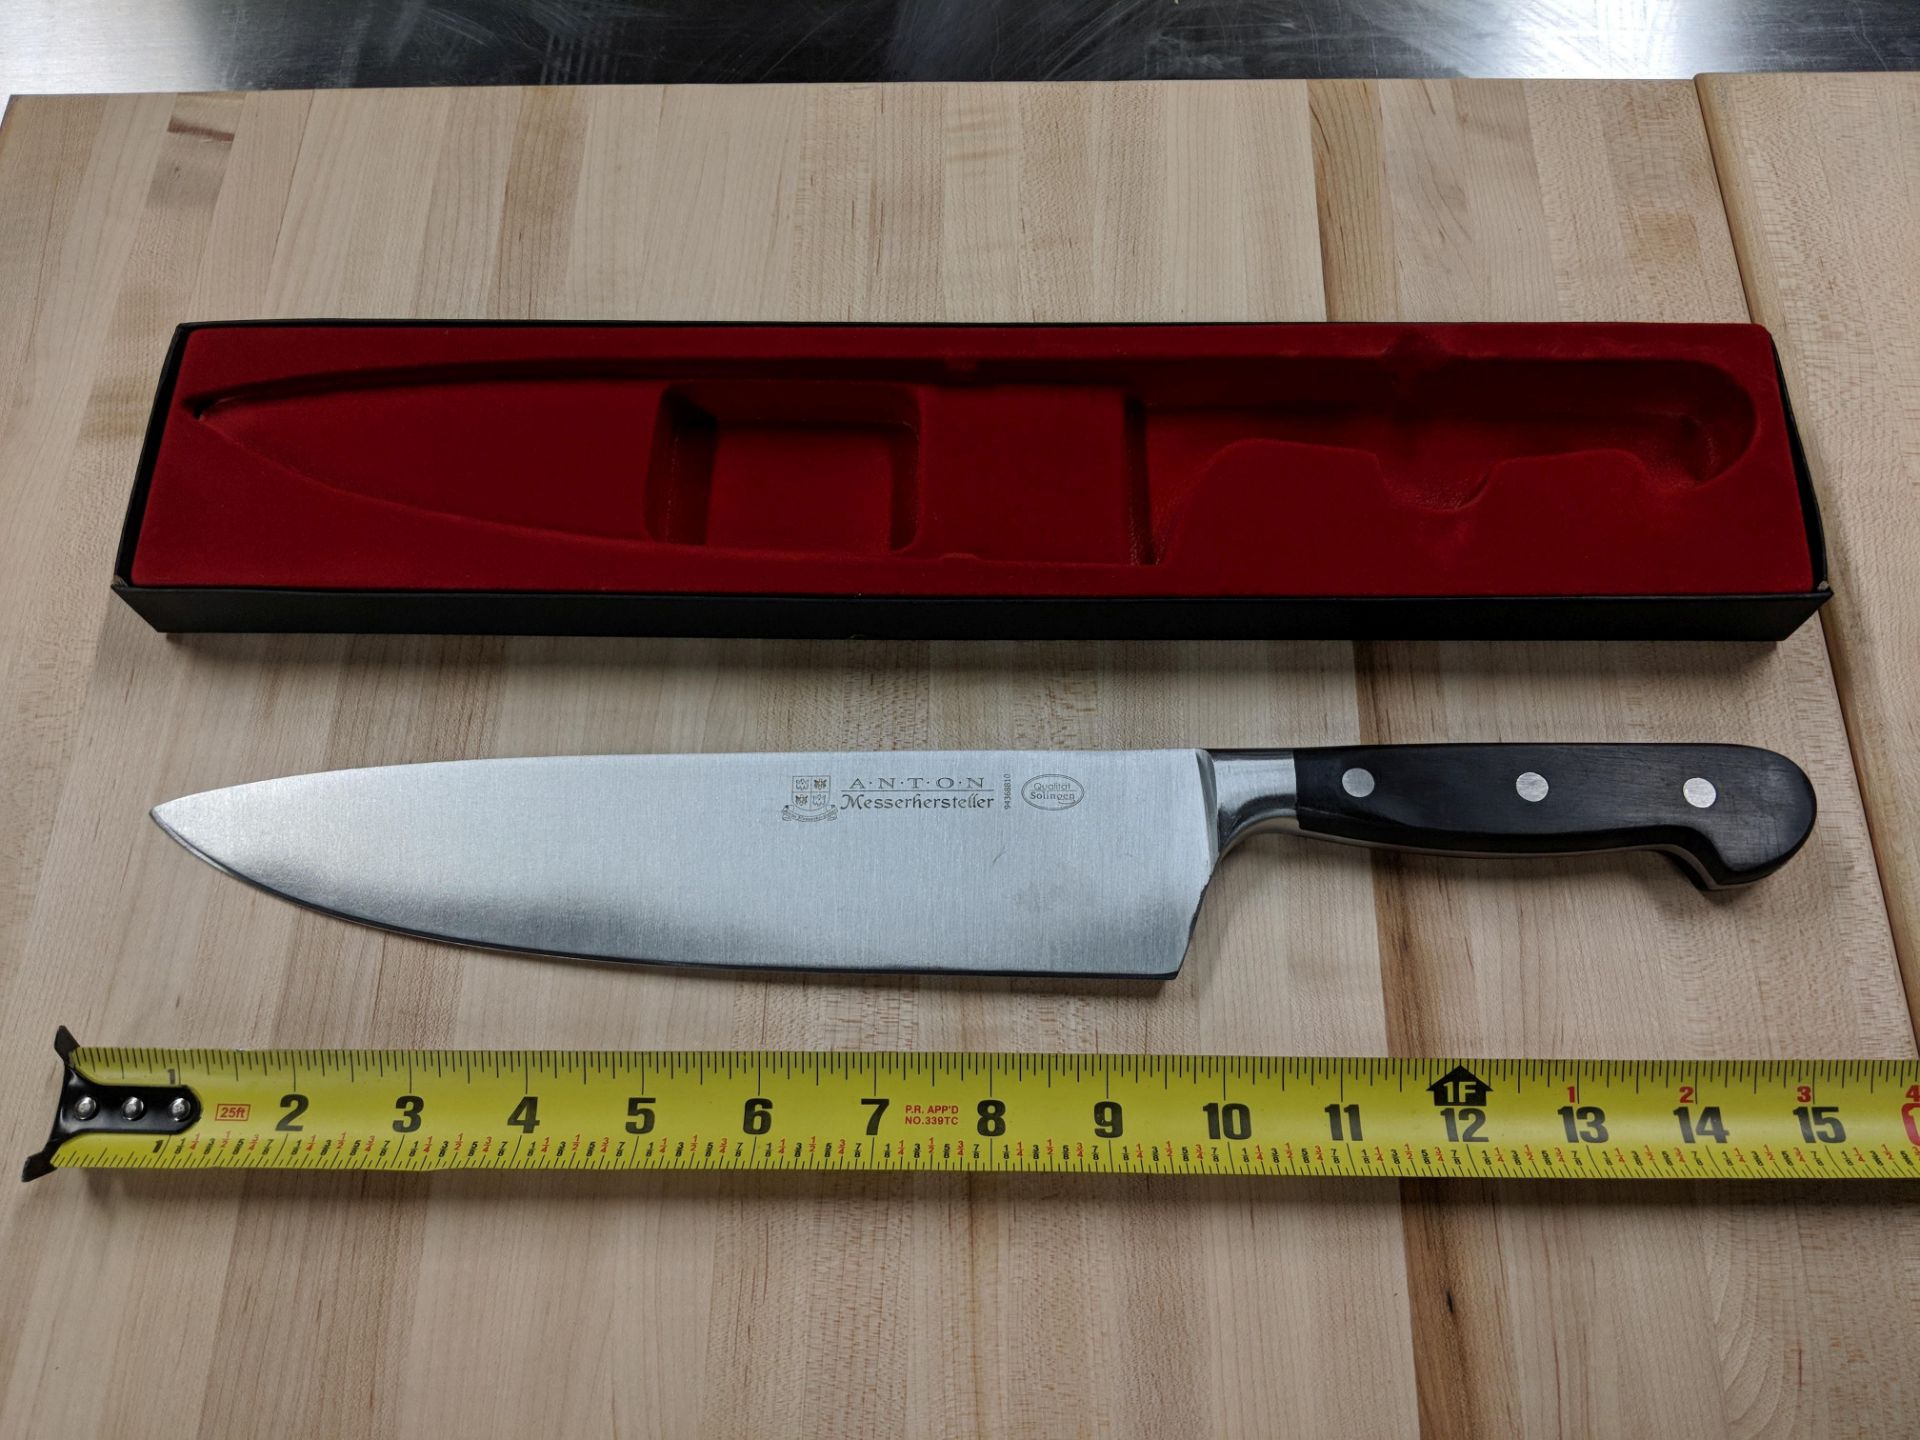 10” Premium Anton Medium Forged Cook's Knife